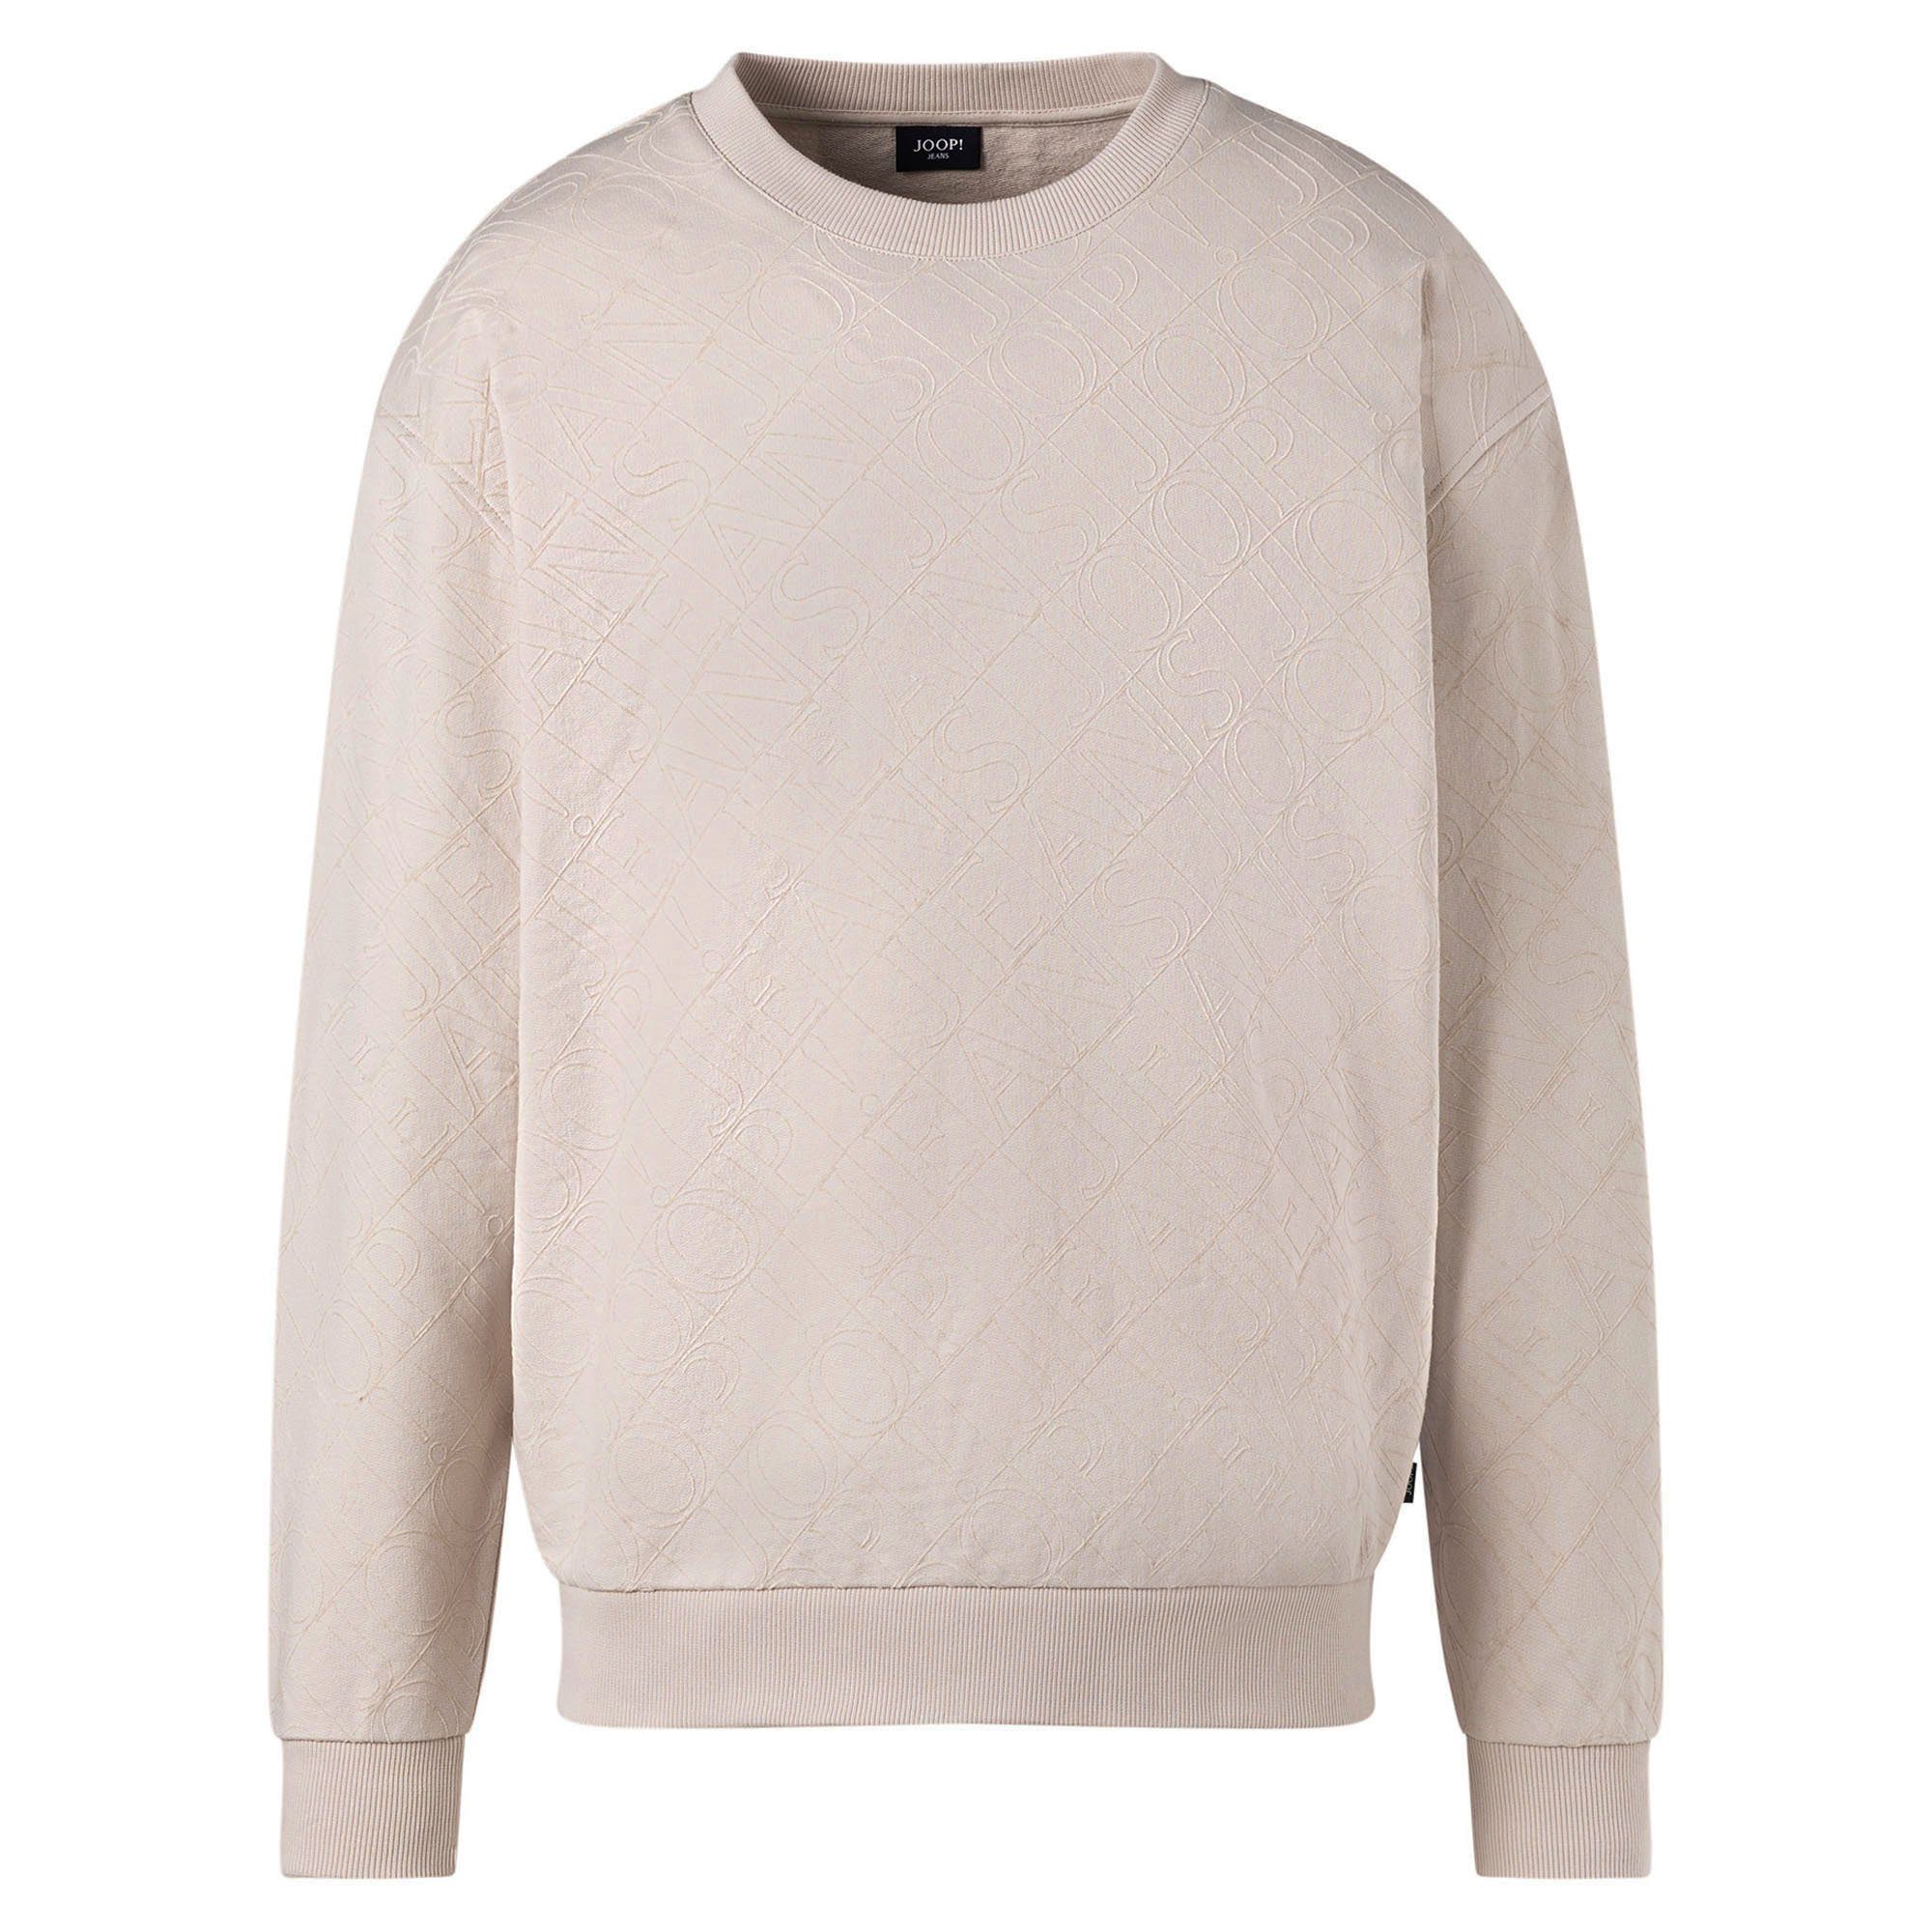 Joop (Open Sweatshirt Rundhals Sweatshirt Cayetano, Sweater, Herren - Jeans White) Natur